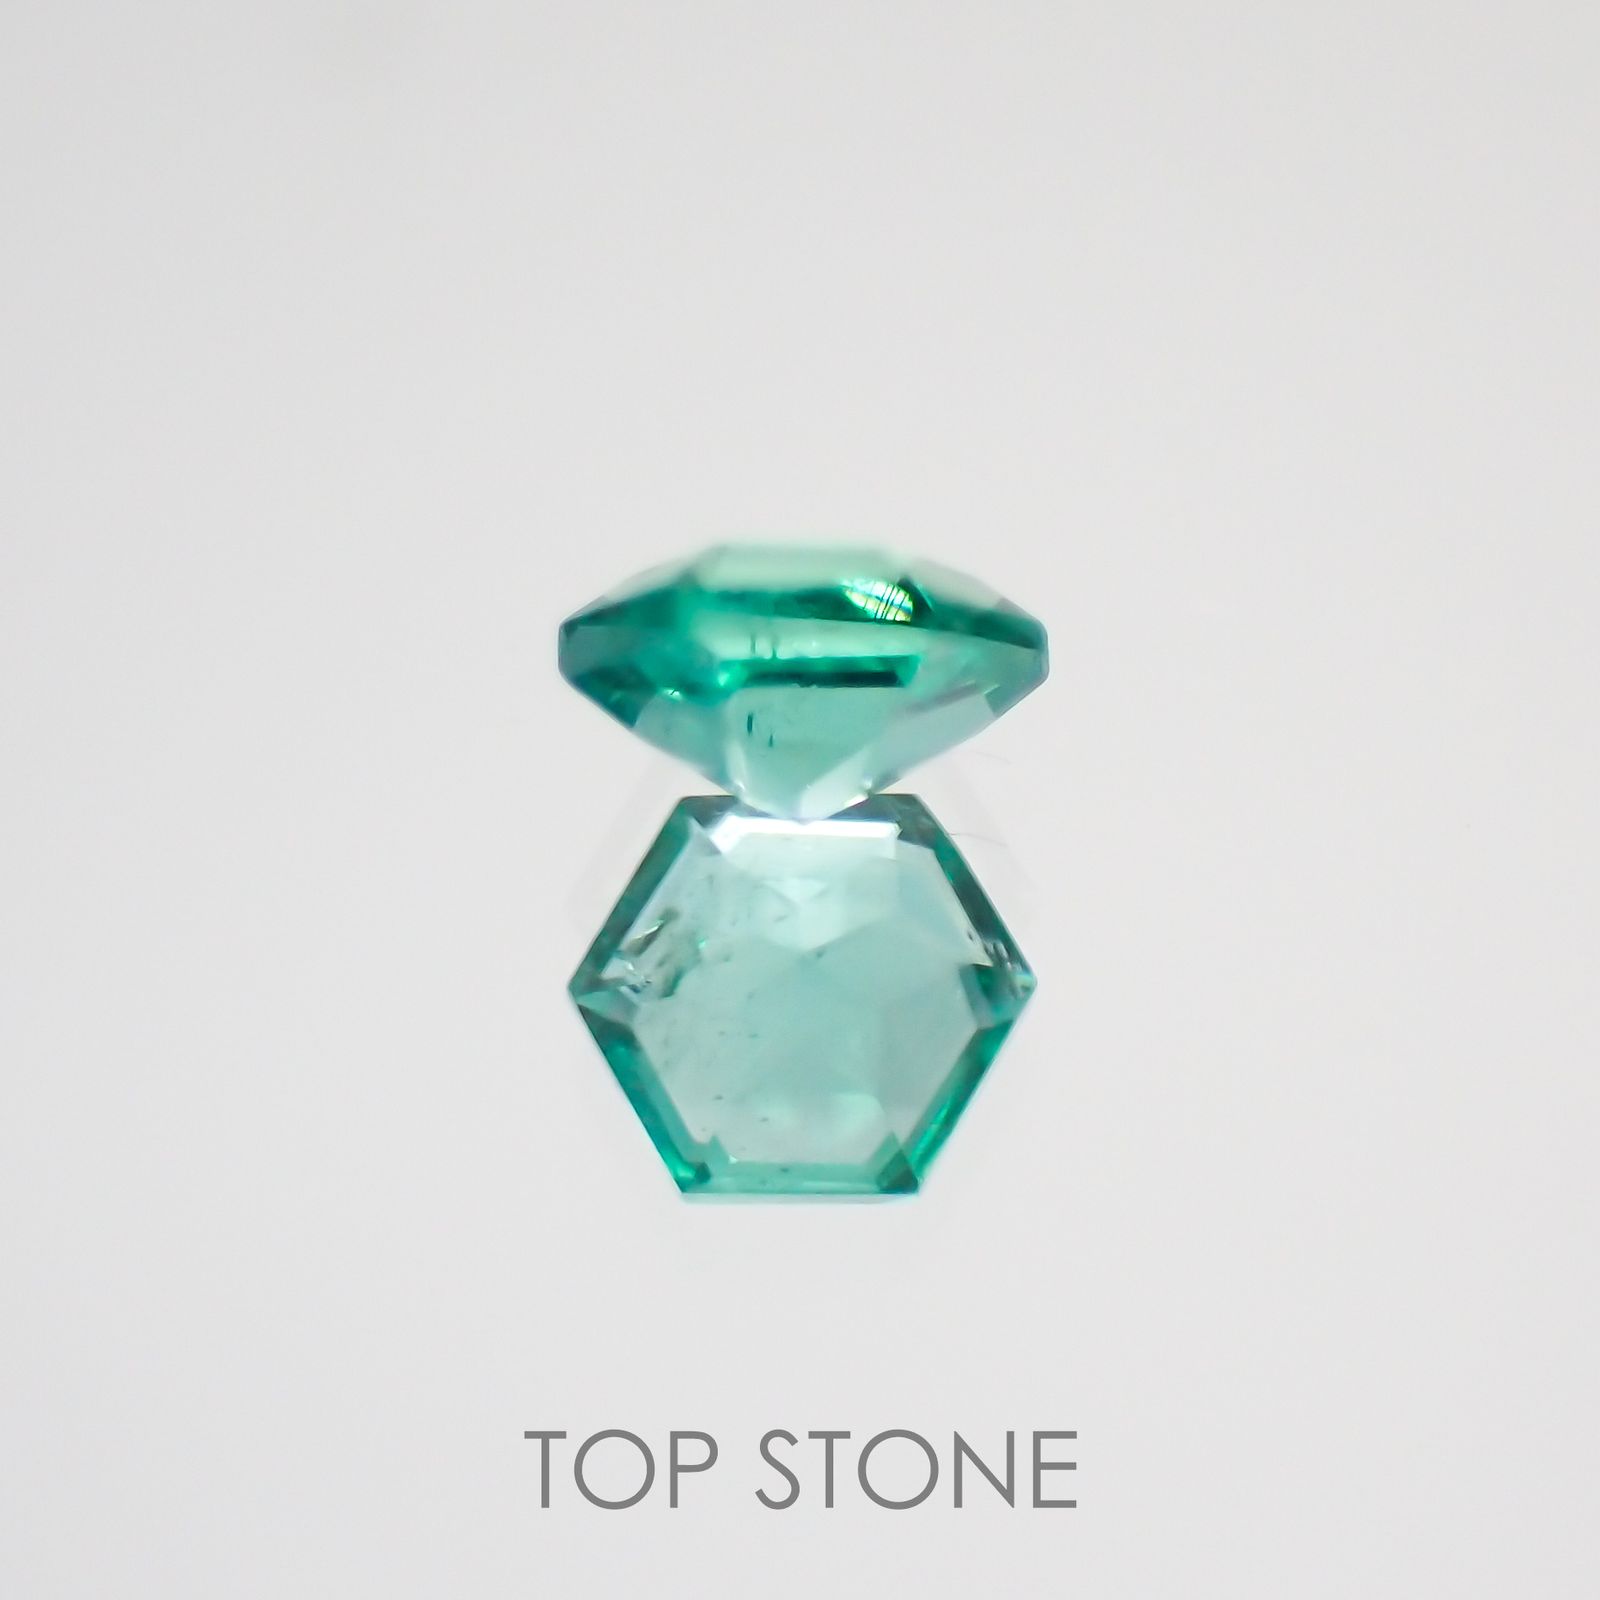 ヘキサゴンカット エメラルド 宝石名エメラルド ザンビア産 0 11ct 識別済 3 3mm前後 Top Stone トップストーン